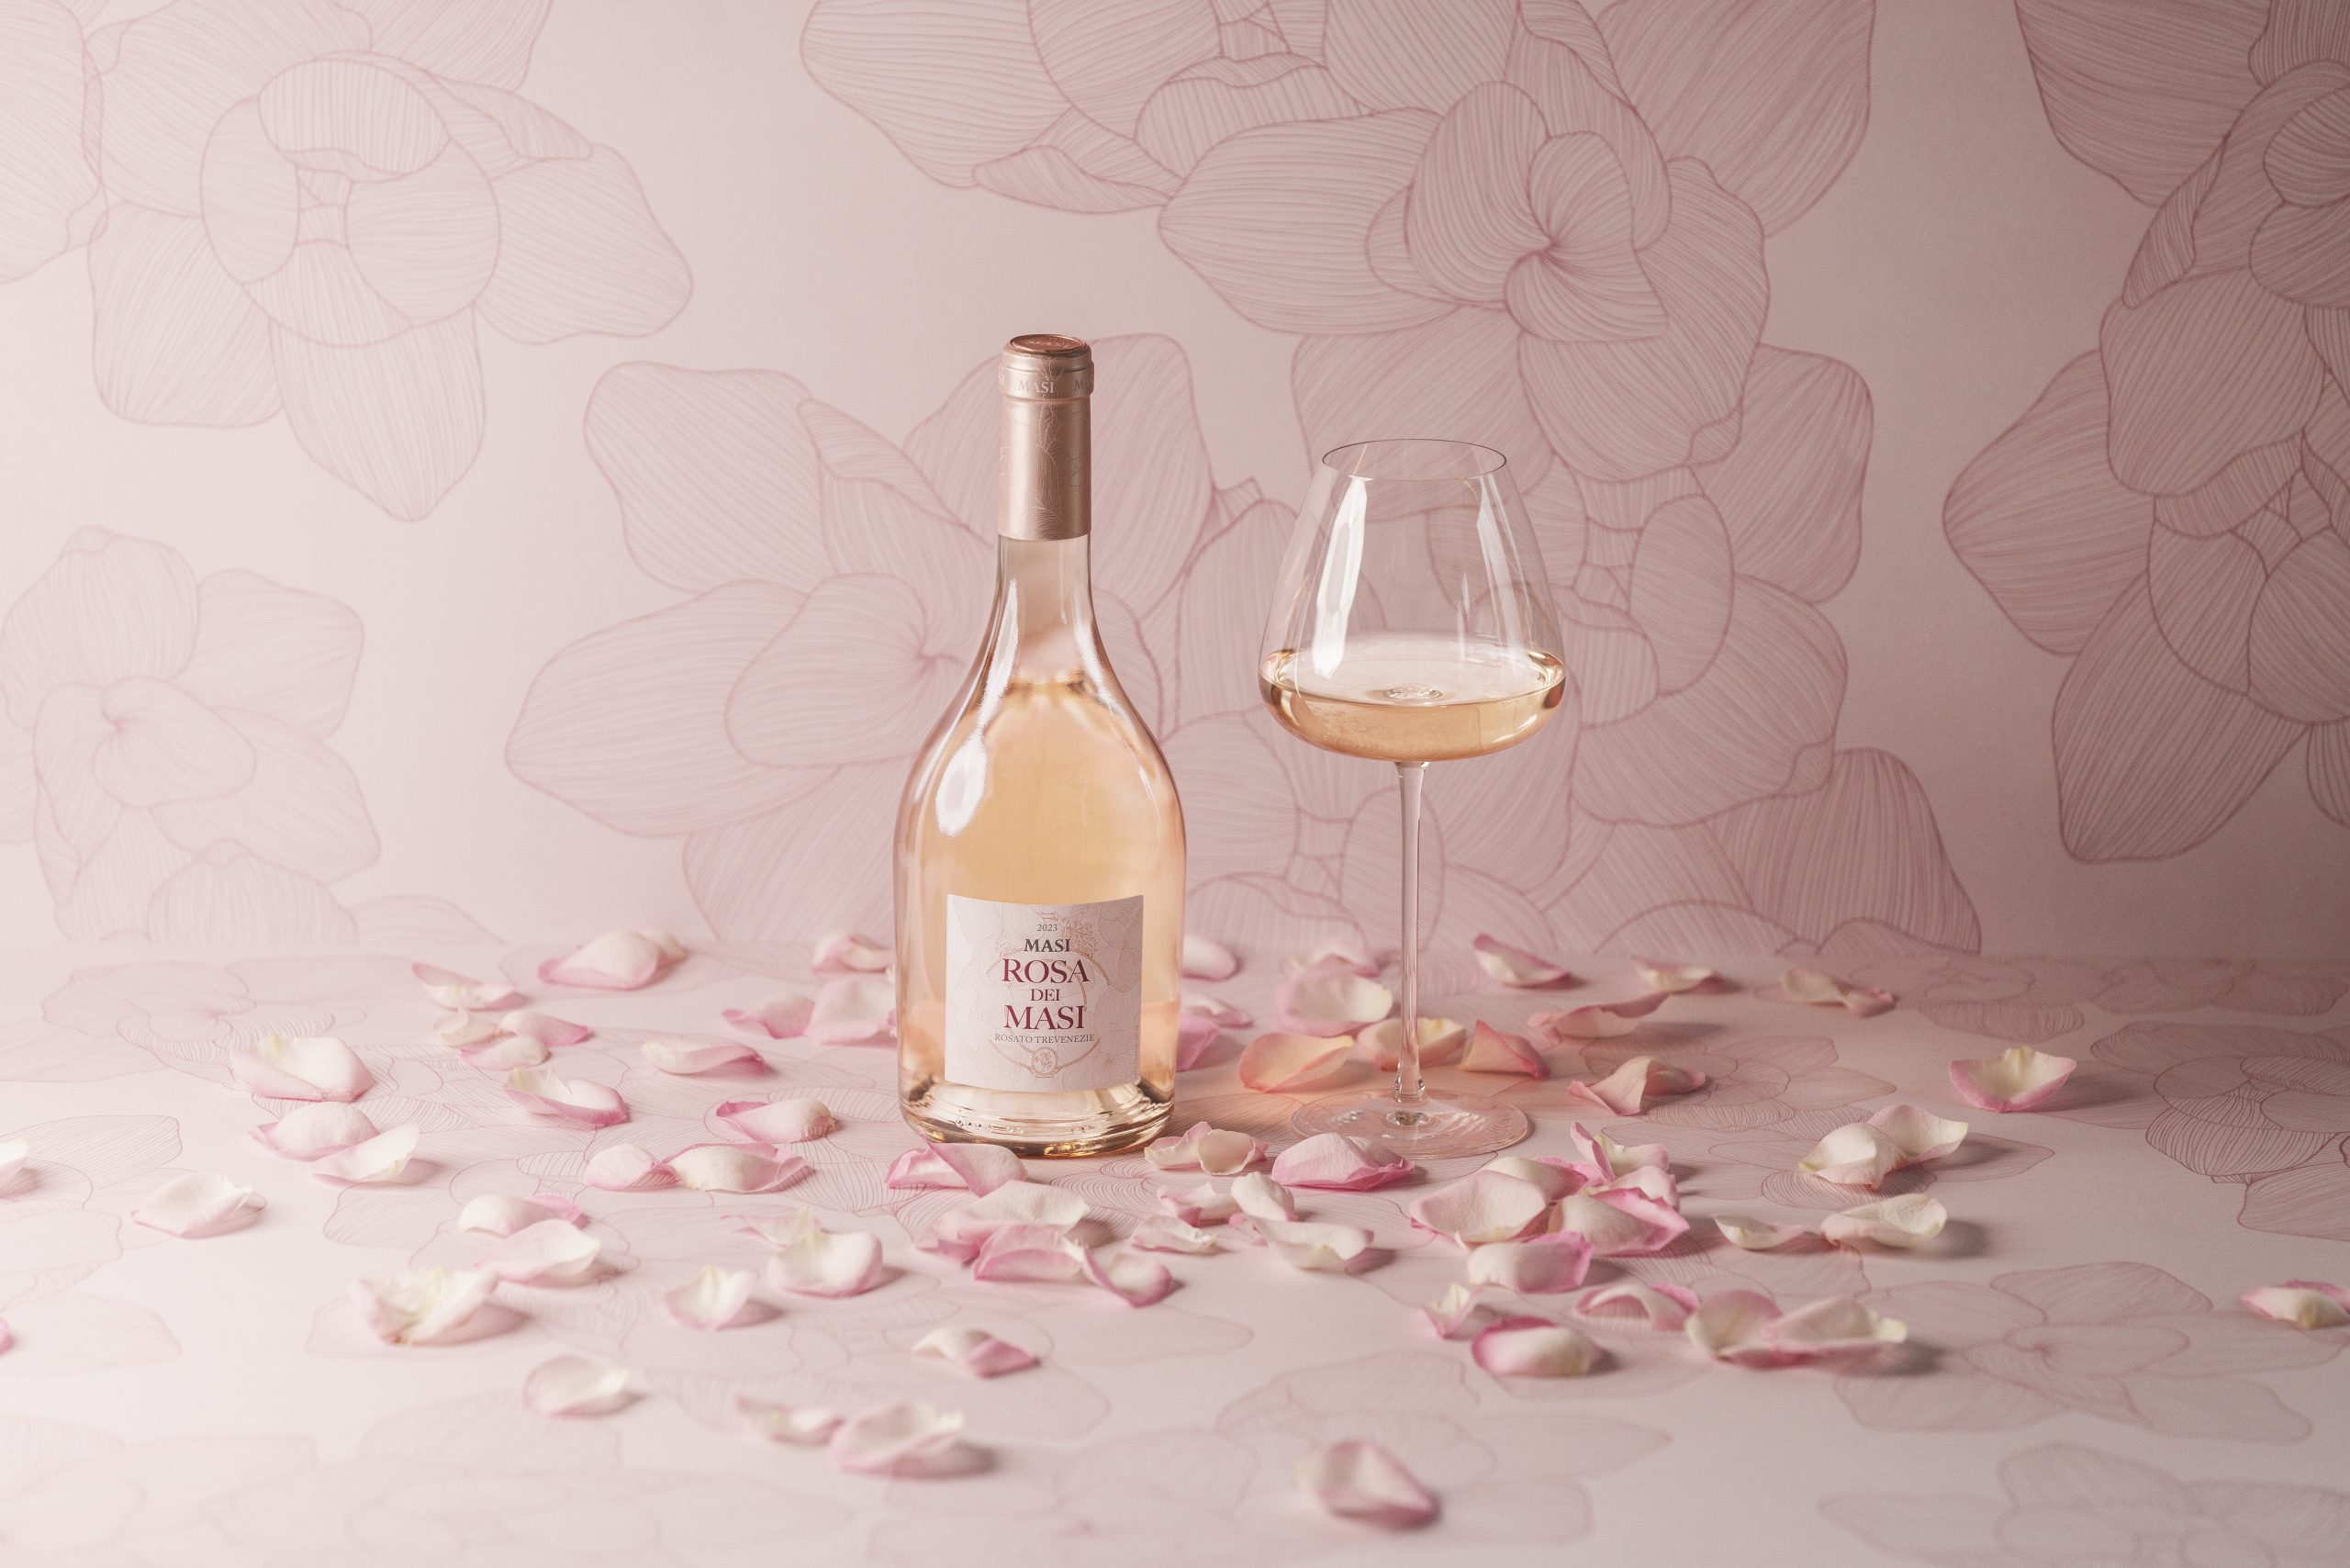 ワインのグラスの隣には、新しいロサ・デイ・マージのボトルが置かれている。バラの花びらが散りばめられ、淡いピンクの背景にはボトルと同じバラのモチーフが水墨画で描かれている。